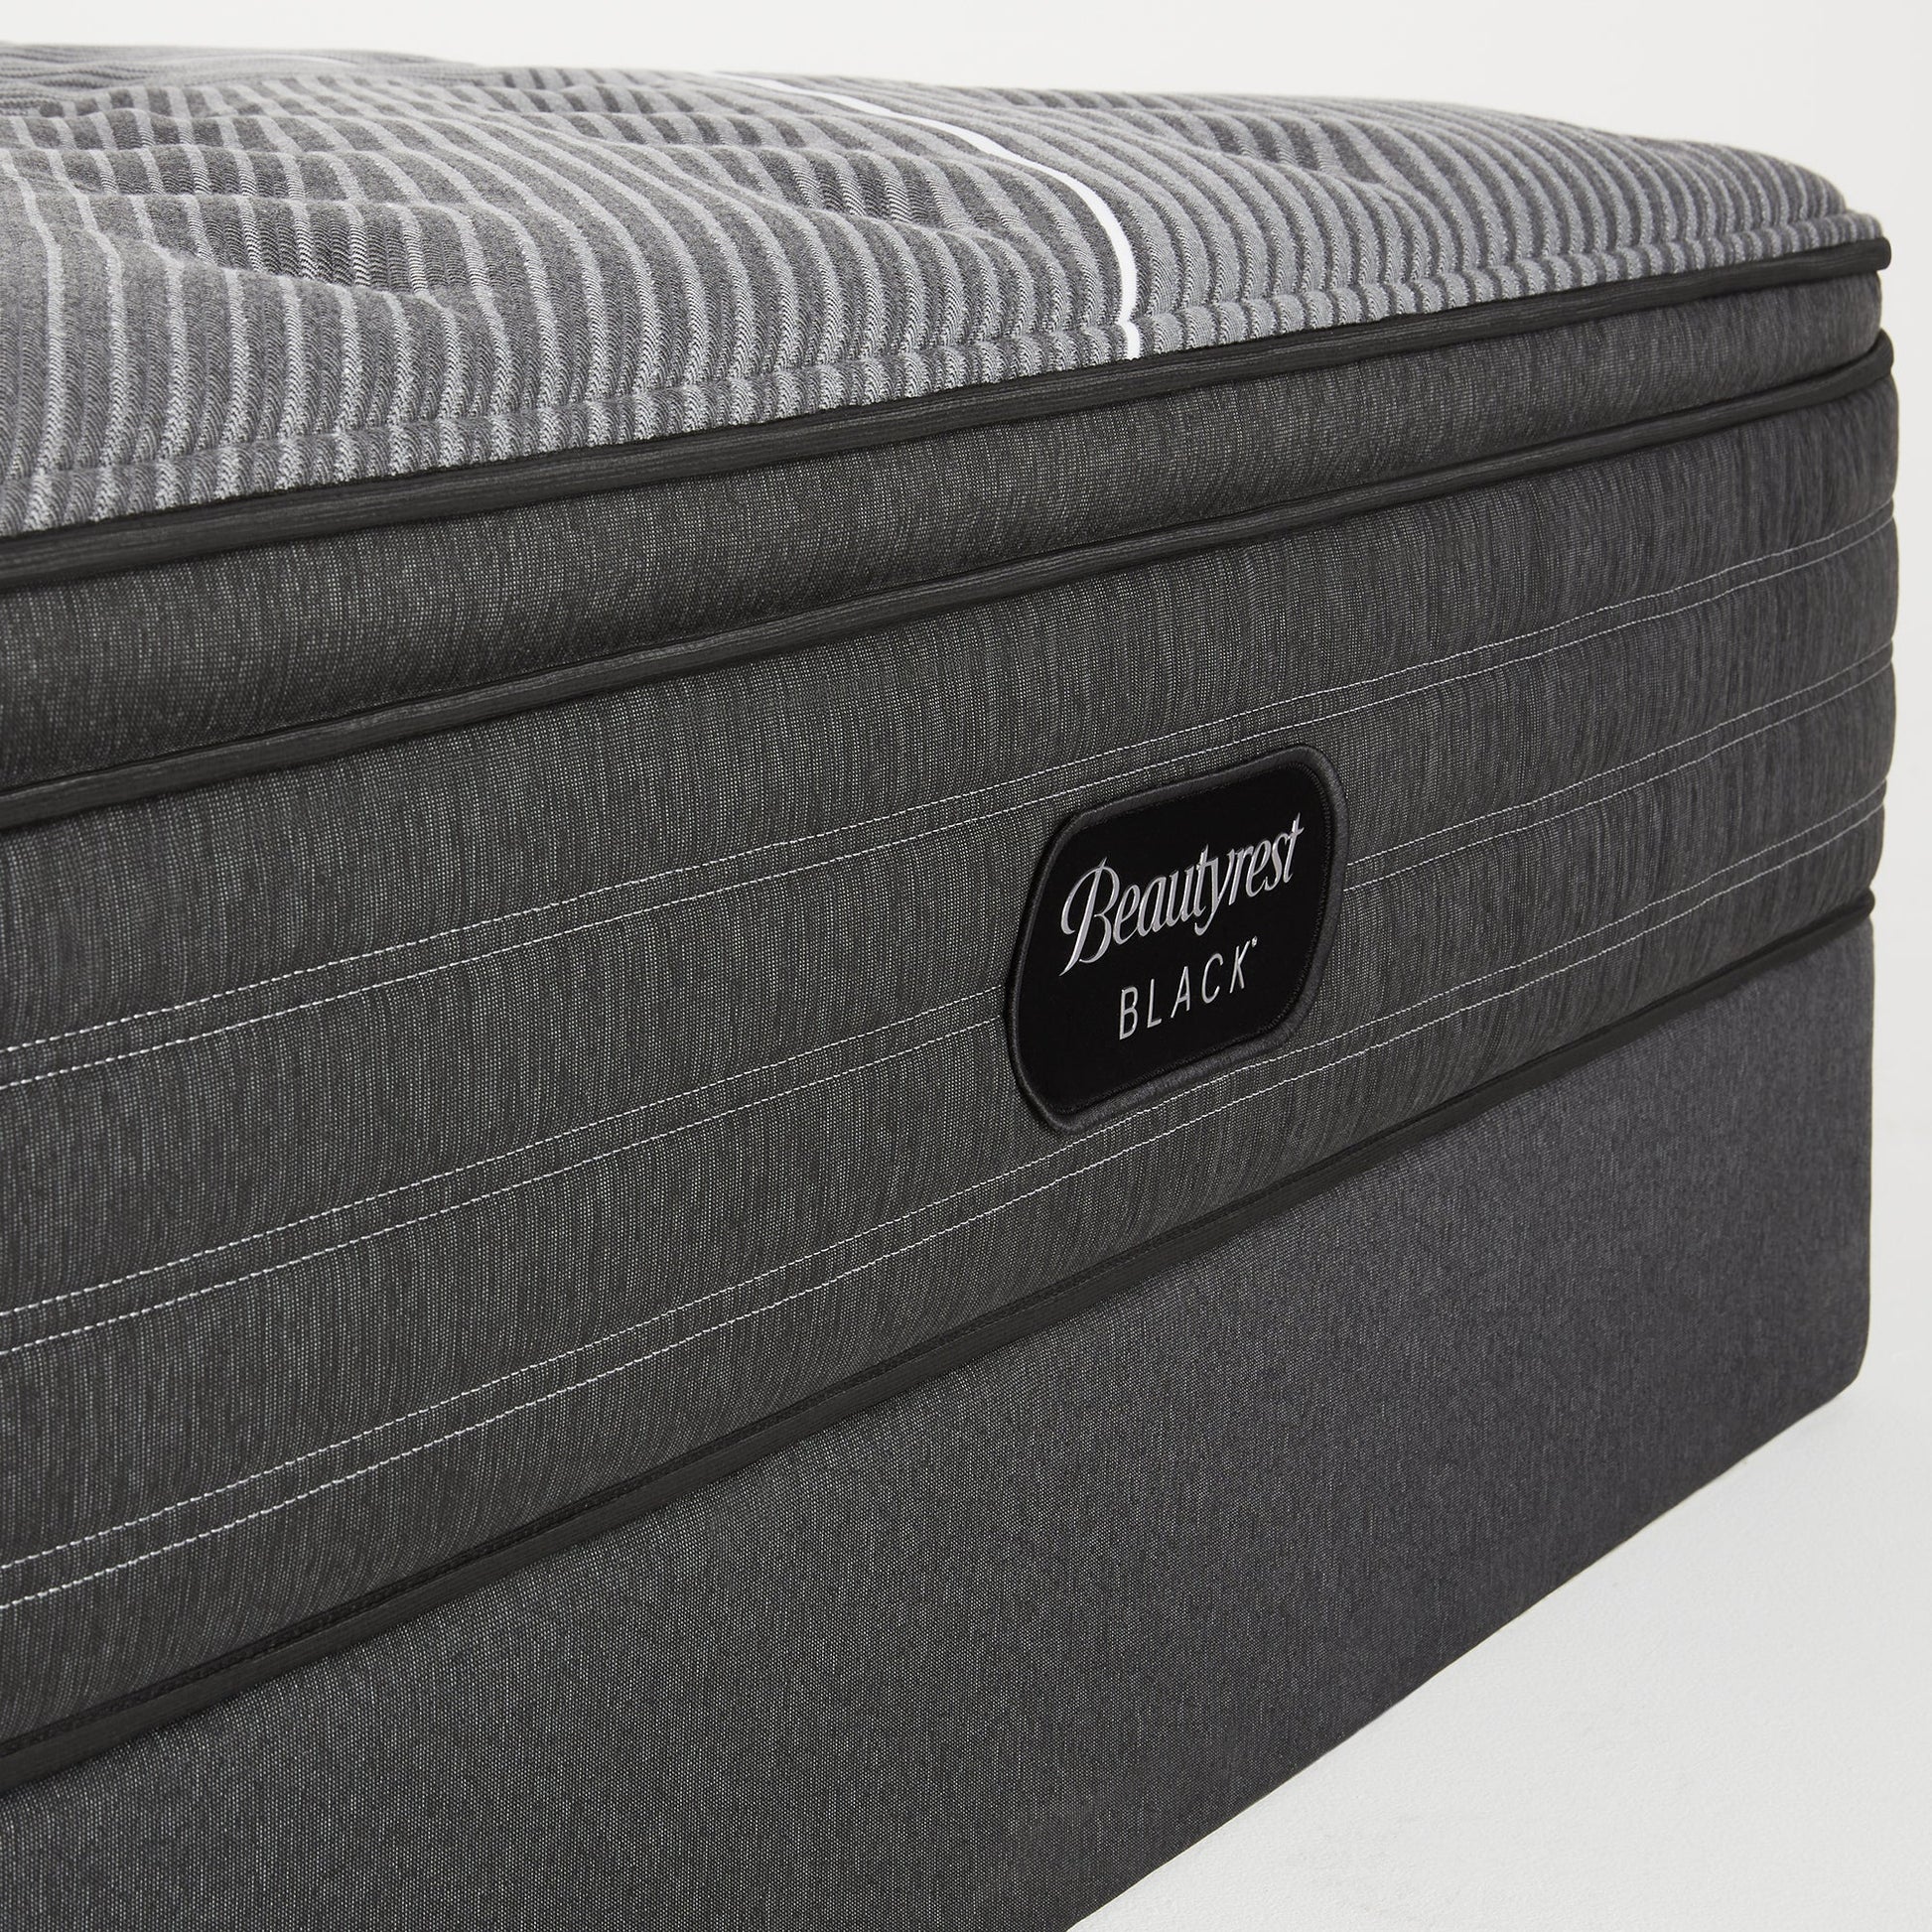 Beautyrest Black B-Class Plush Pillow Top Mattress Front Close Up Image